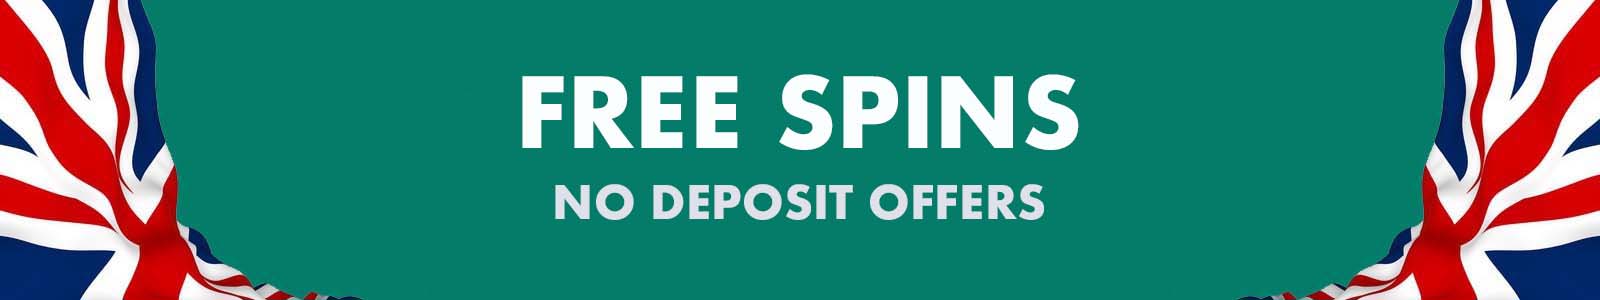 deposit 10 pound get free spins